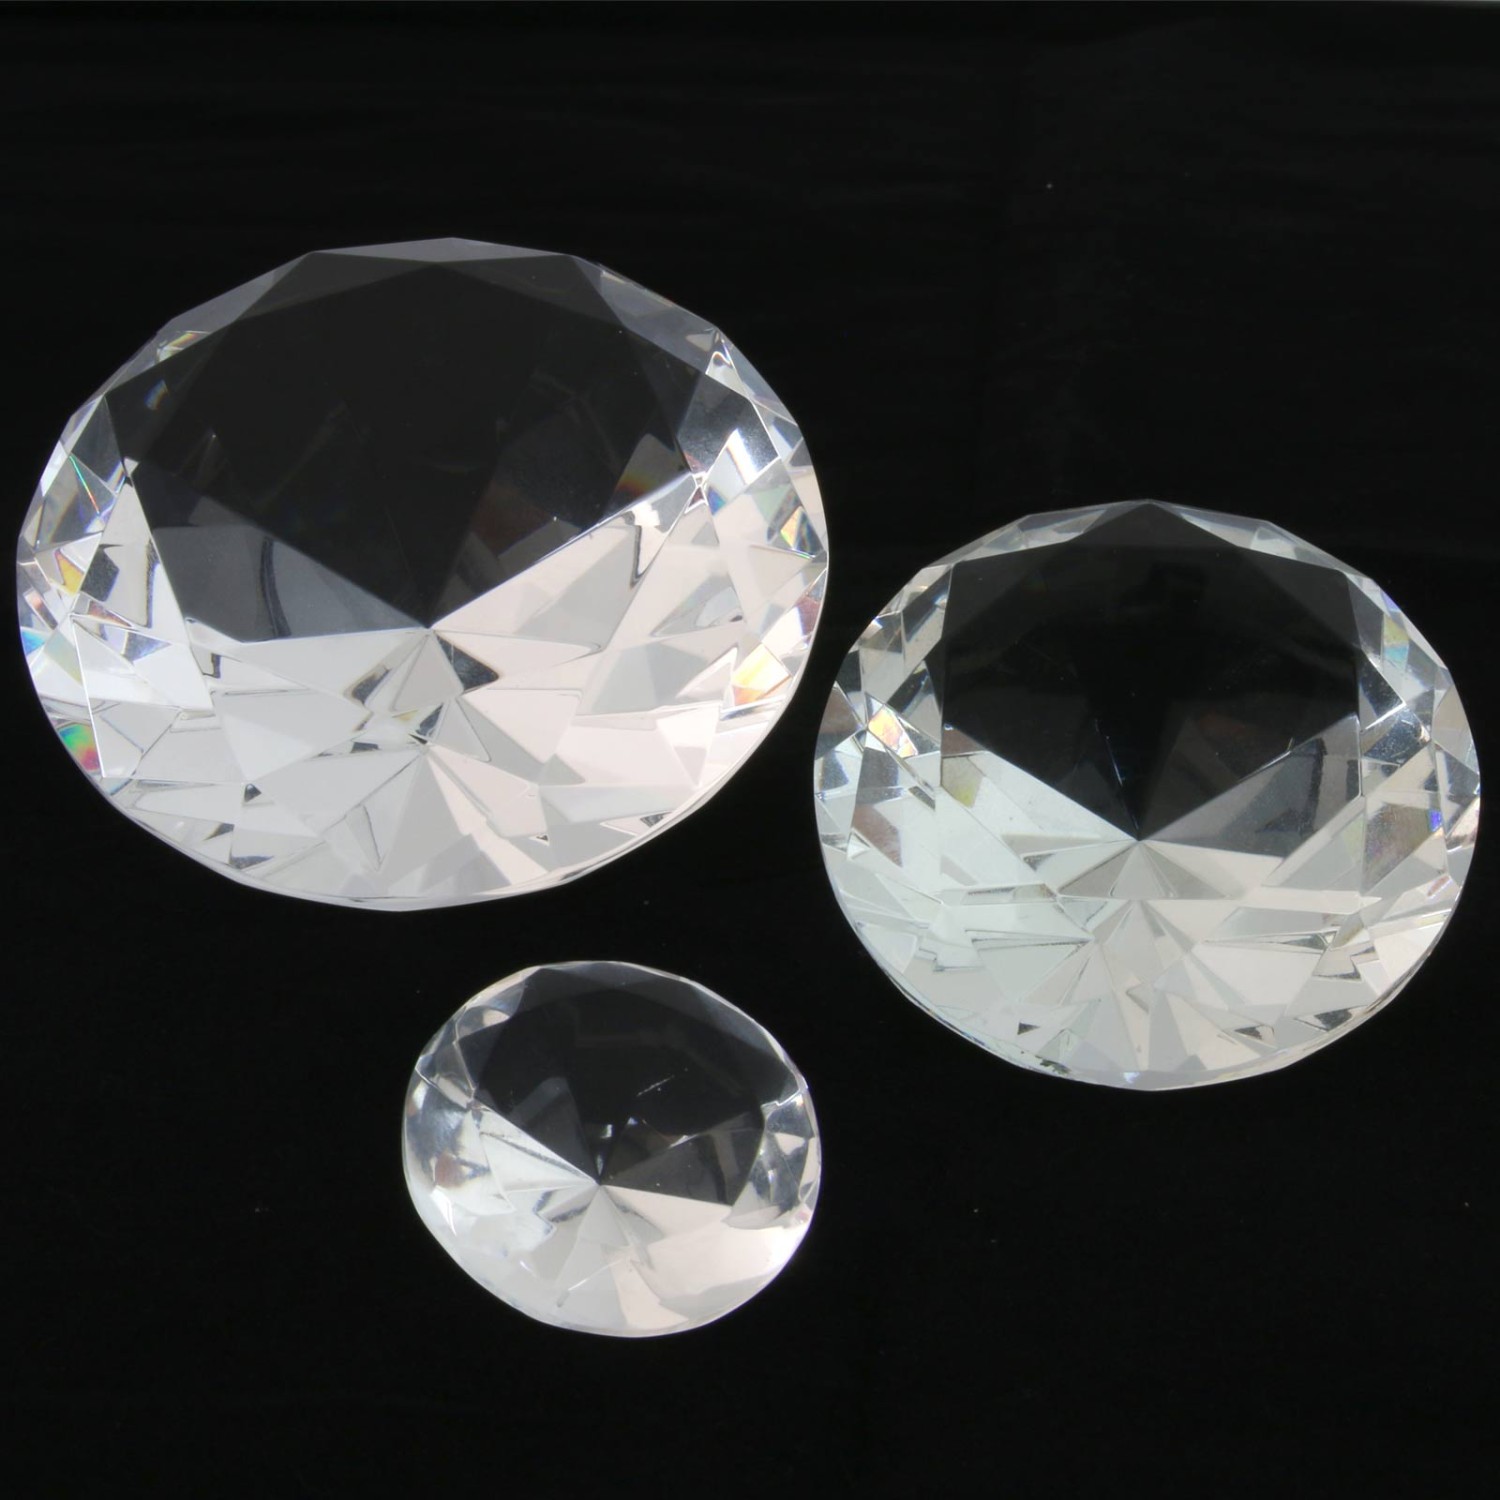 2. Foto Diamant Kristall Glasdiamant Deko Tischdeko Hochzeit 3 Größen (Größe: S - 4cm)